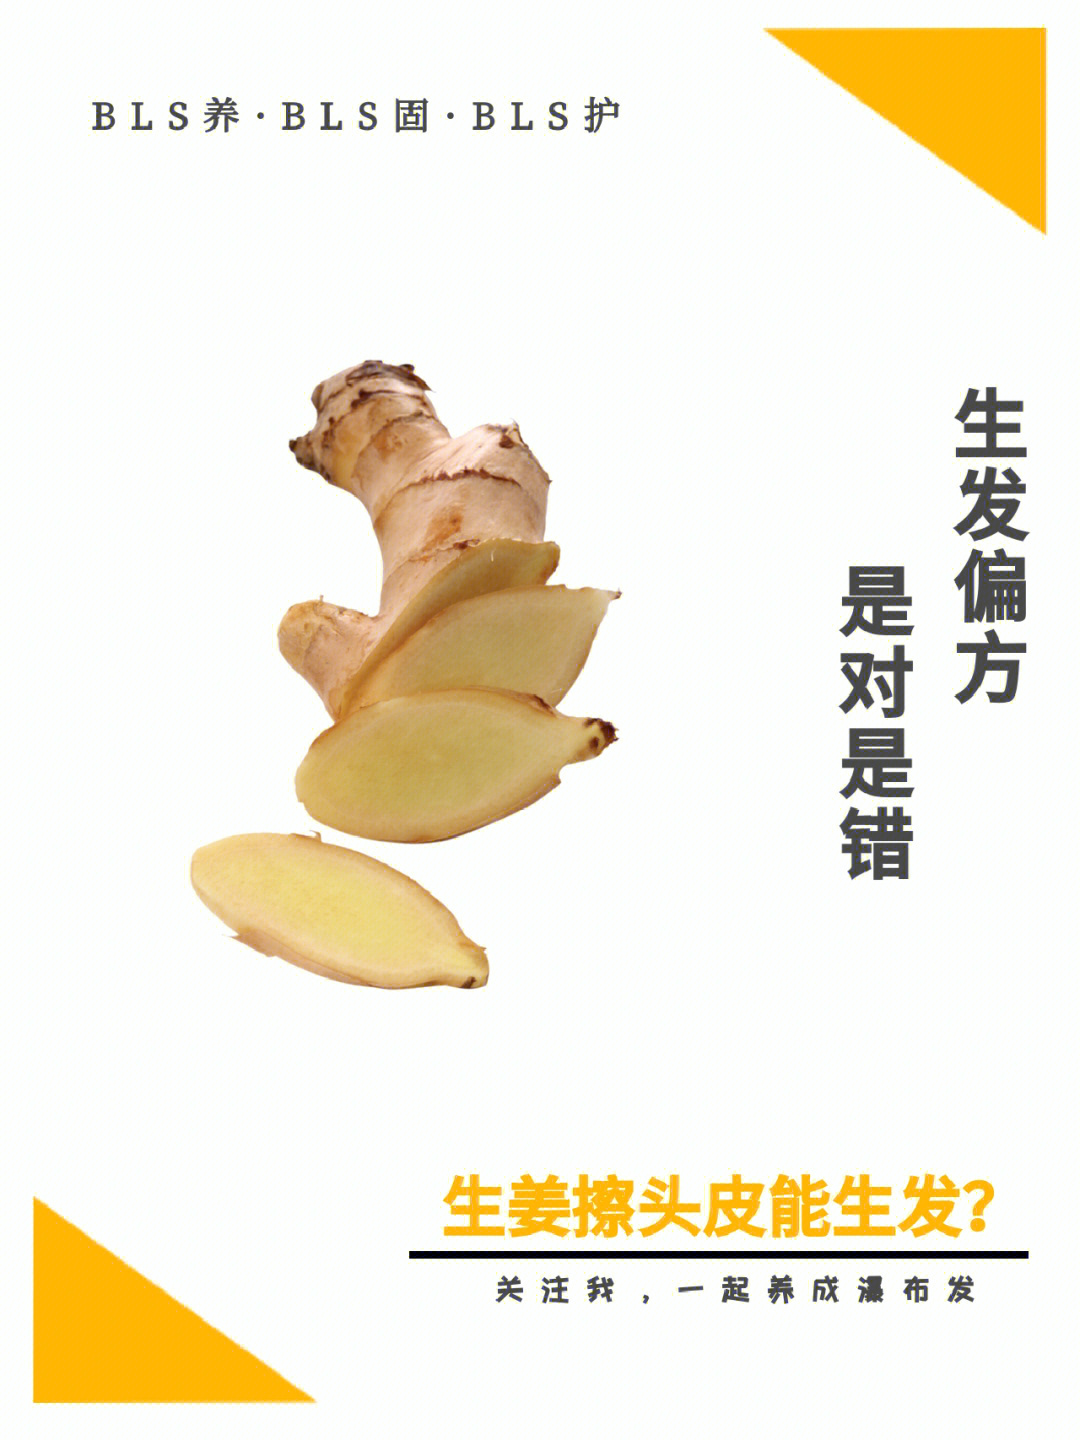 9696生姜擦头皮在偏方治脱中,也是一度被誉为黄金疗法的存在